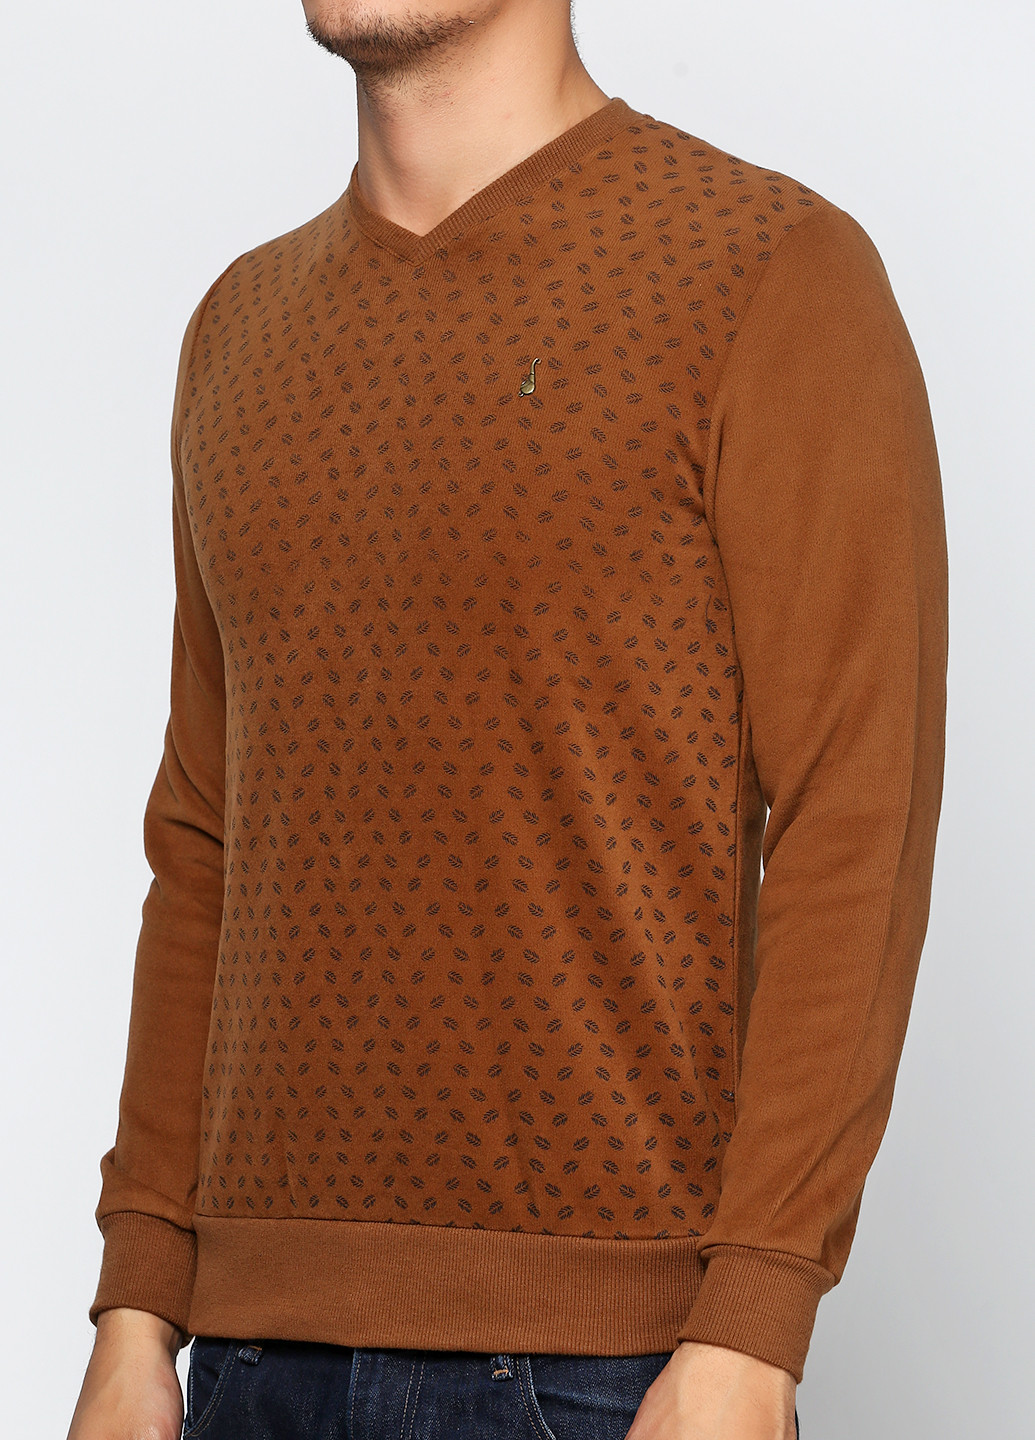 Горчичный демисезонный пуловер пуловер DKM